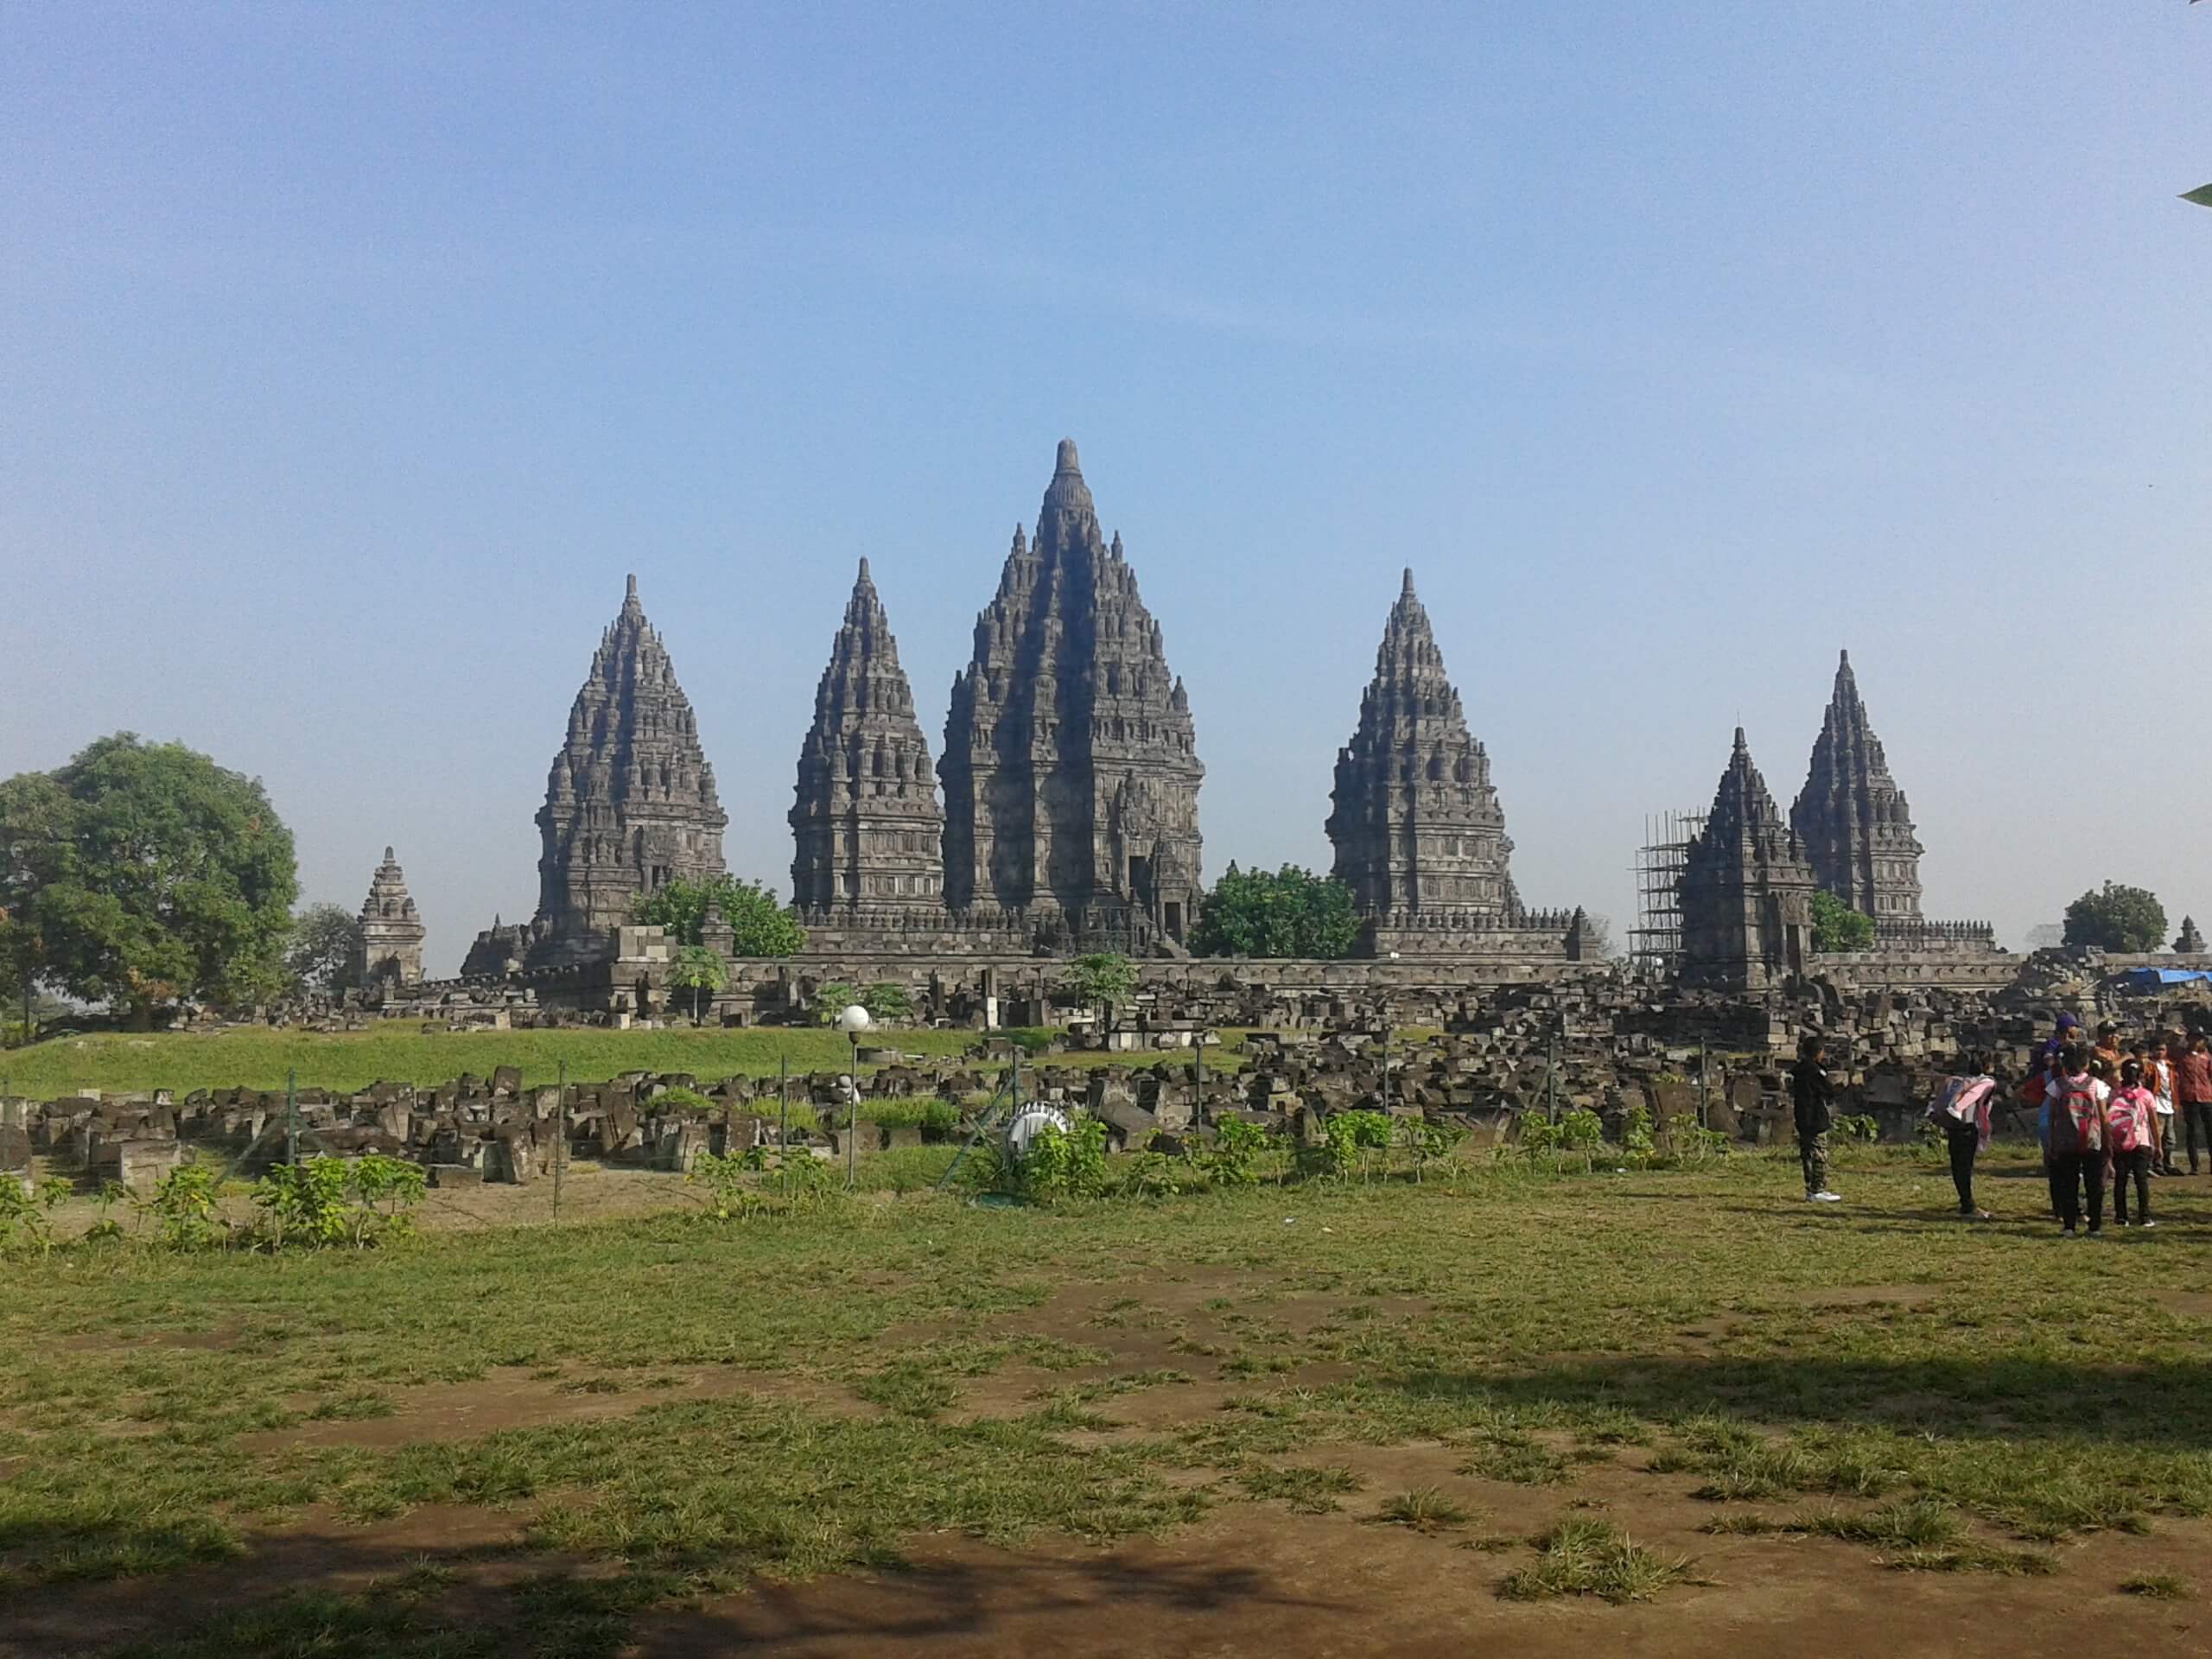 Prambanan temple in Central java